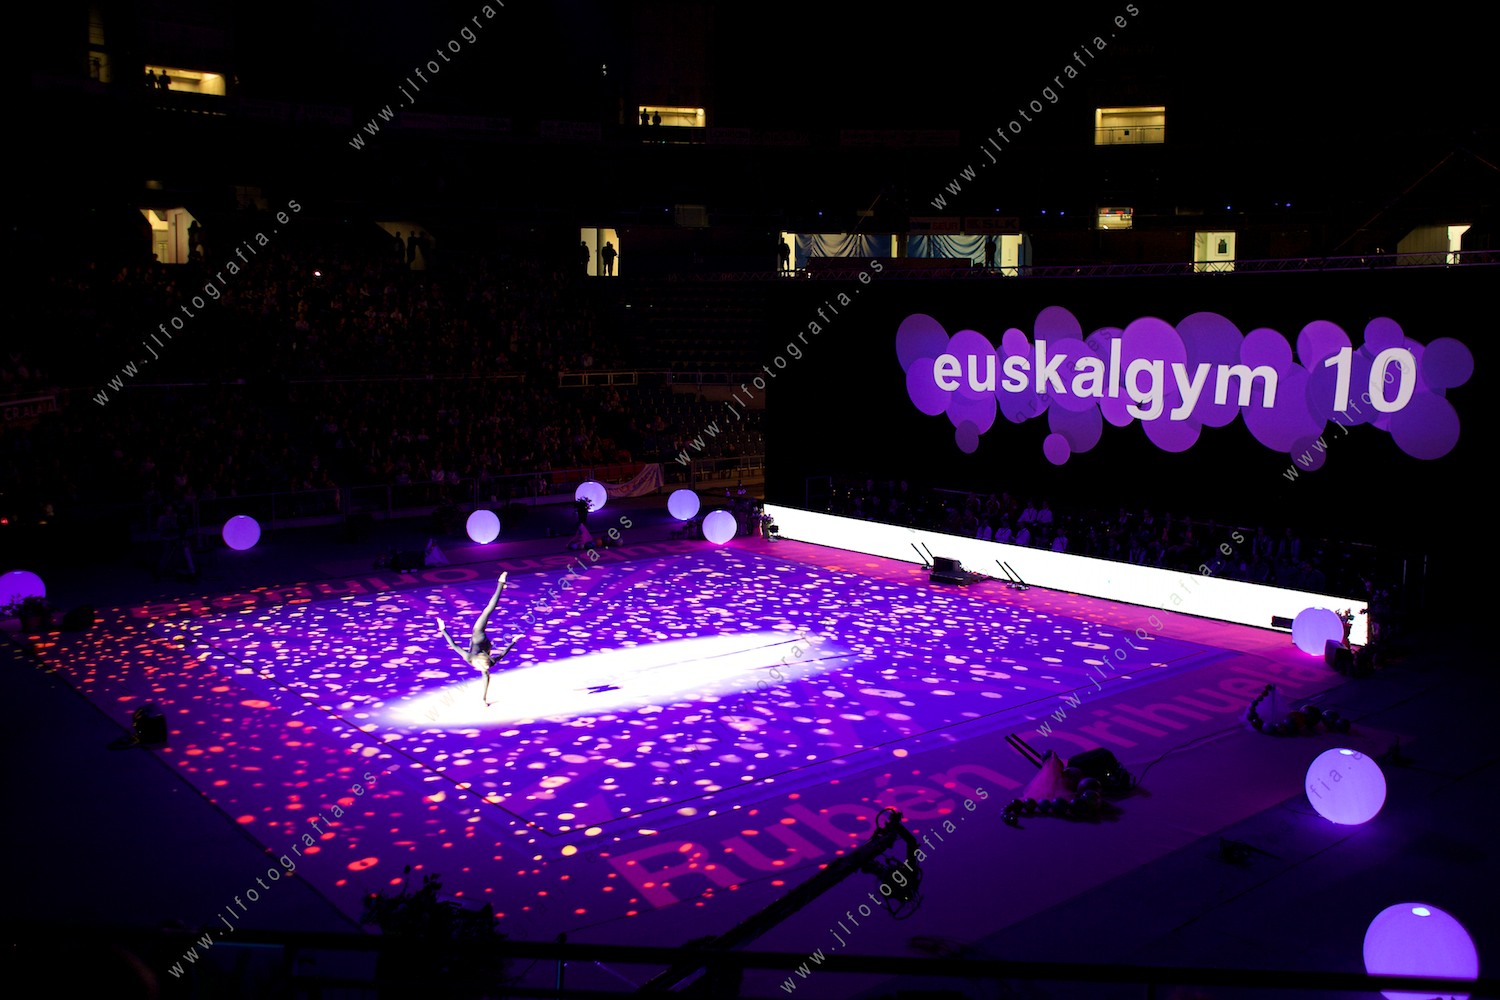 actuación en la clausura de la gala del Euskalgym 10 de 2015 celebrado en el Fernando Buesa Arena de Vitoria